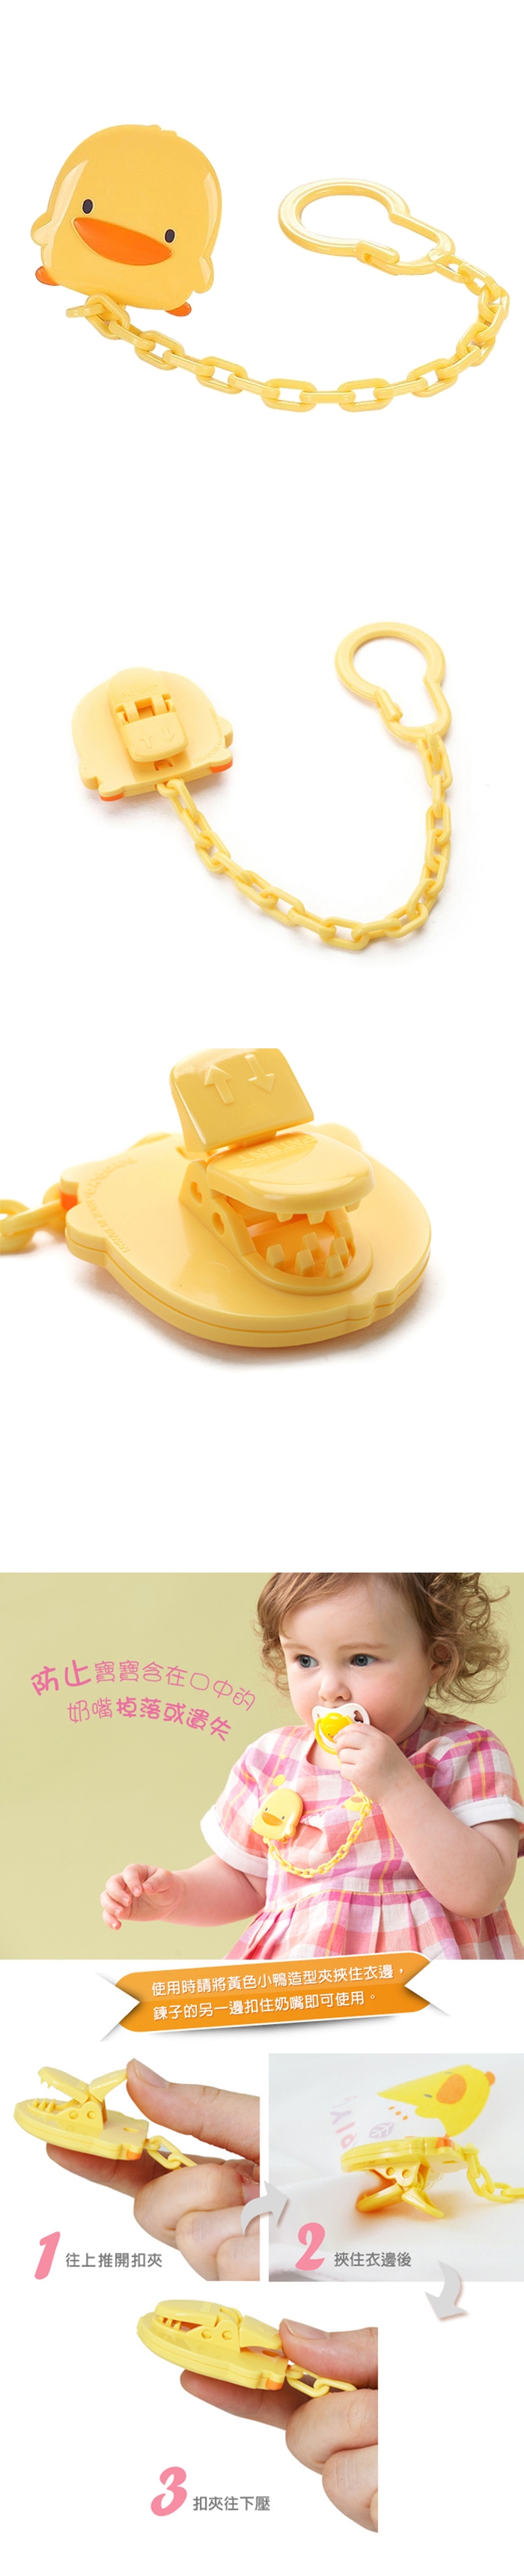 黃色小鴨-造型安全奶嘴夾(GT-83167)